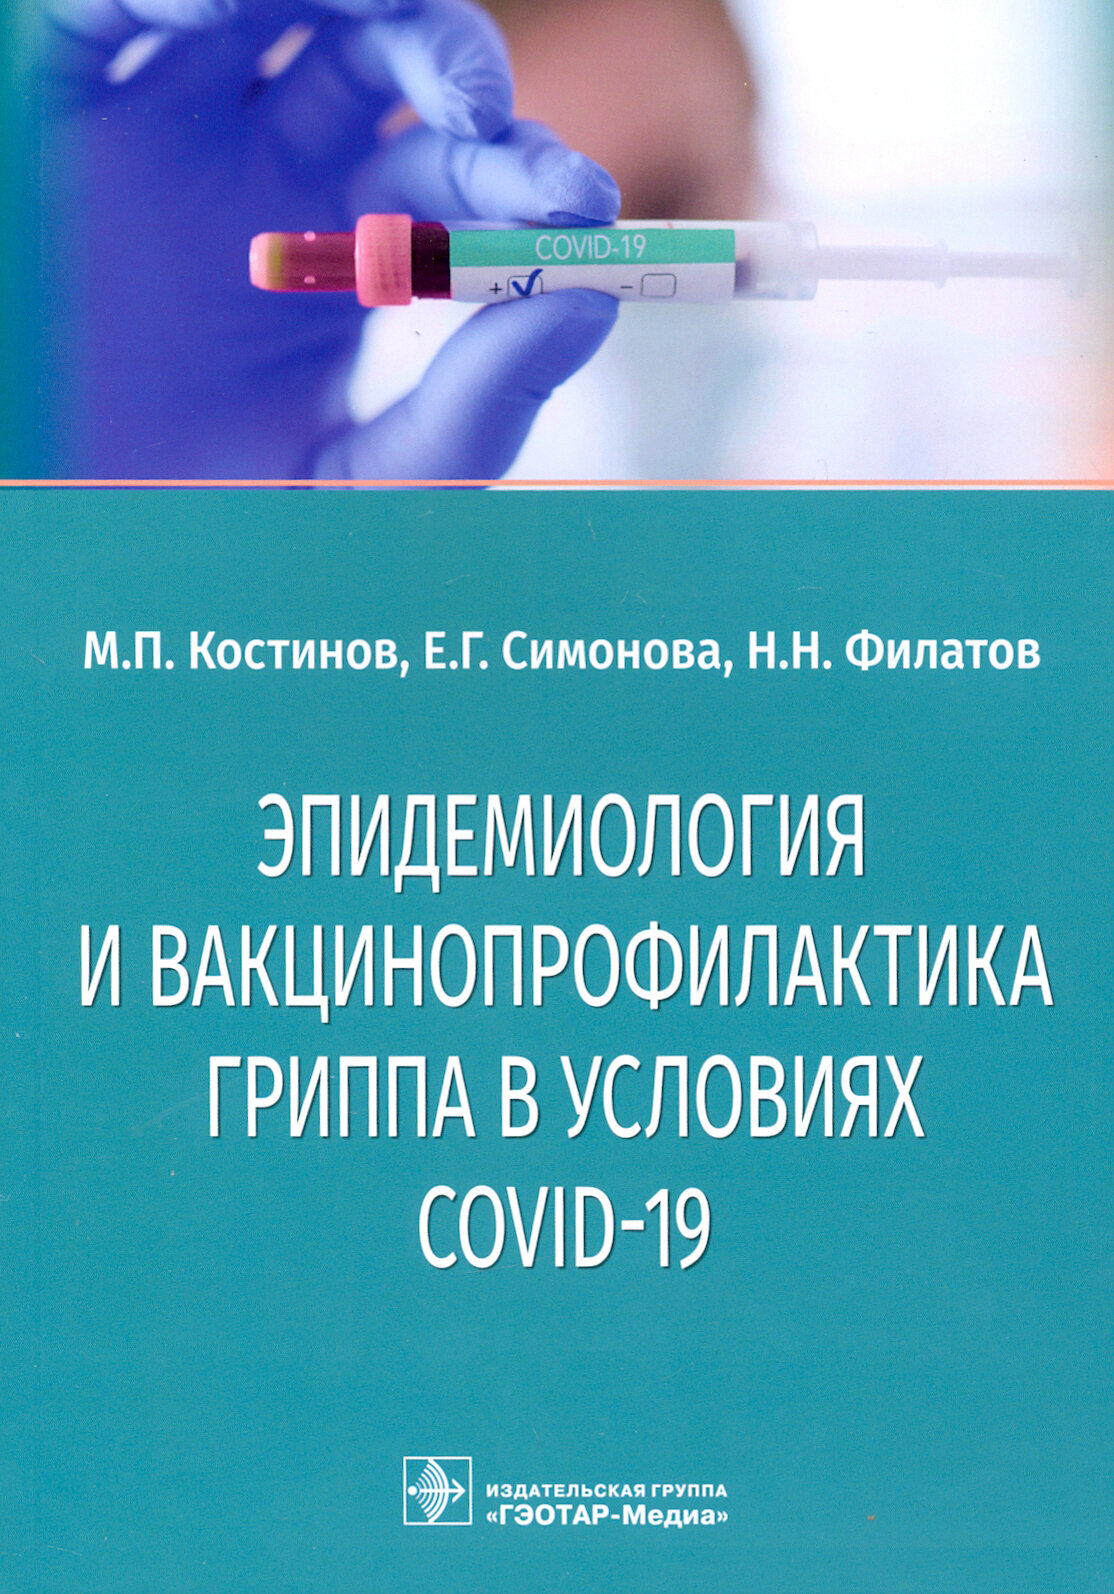 Эпидемиология и вакцинопрофилактика гриппа в условиях COVID-19 - фото №3